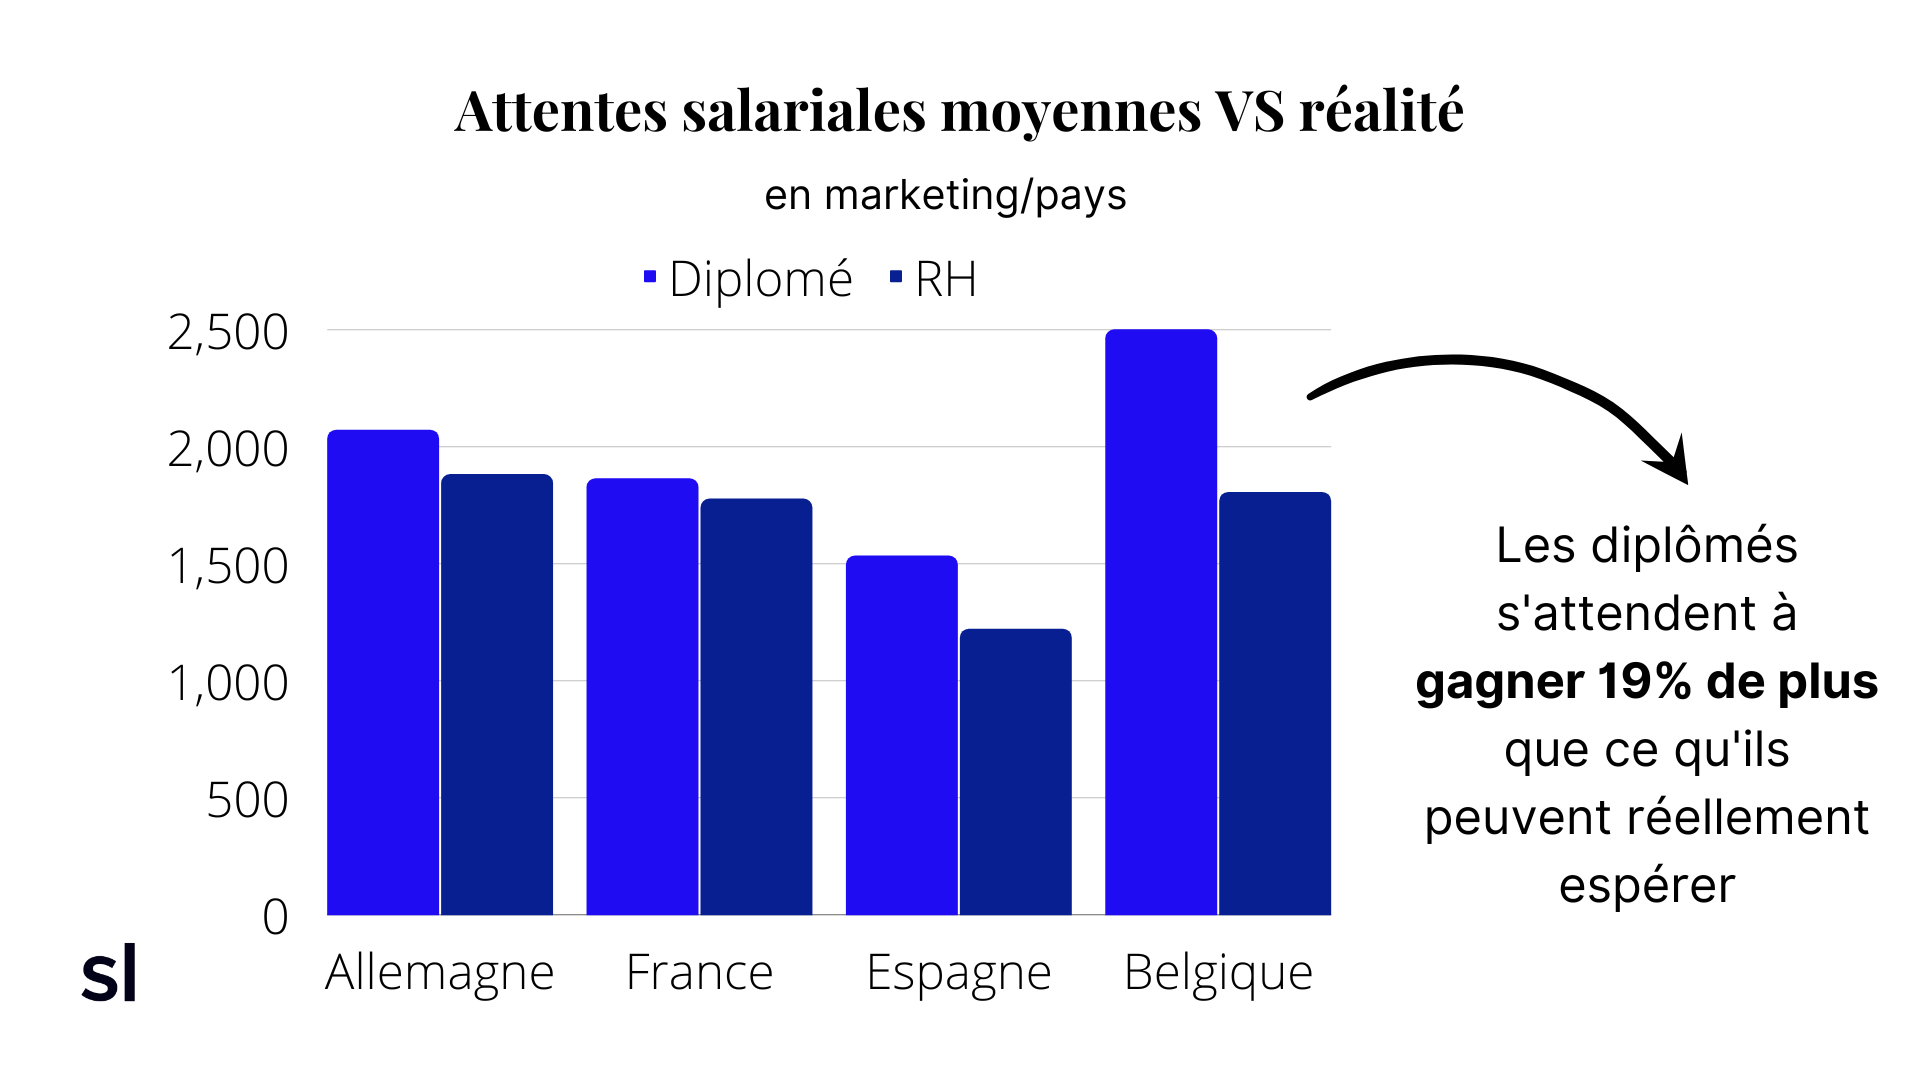 Etude : Attentes salariales moyennes VS réalité en marketing par pays